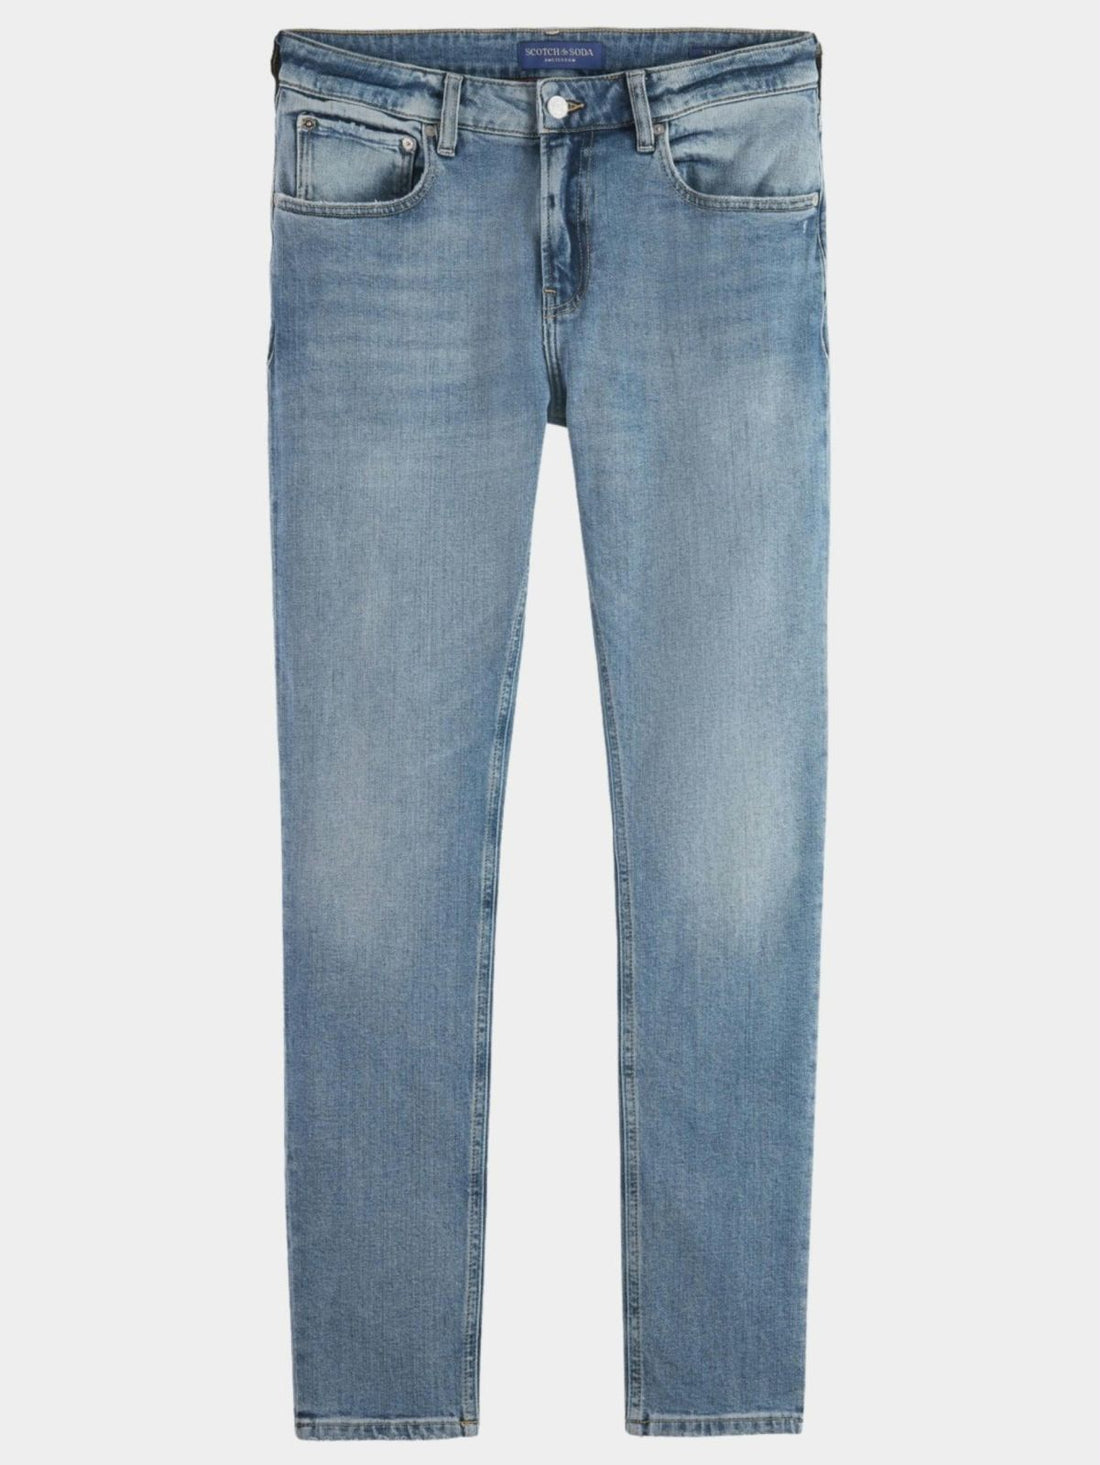 5 pocket slim fit jeans- comfort stretch Skinny Fit